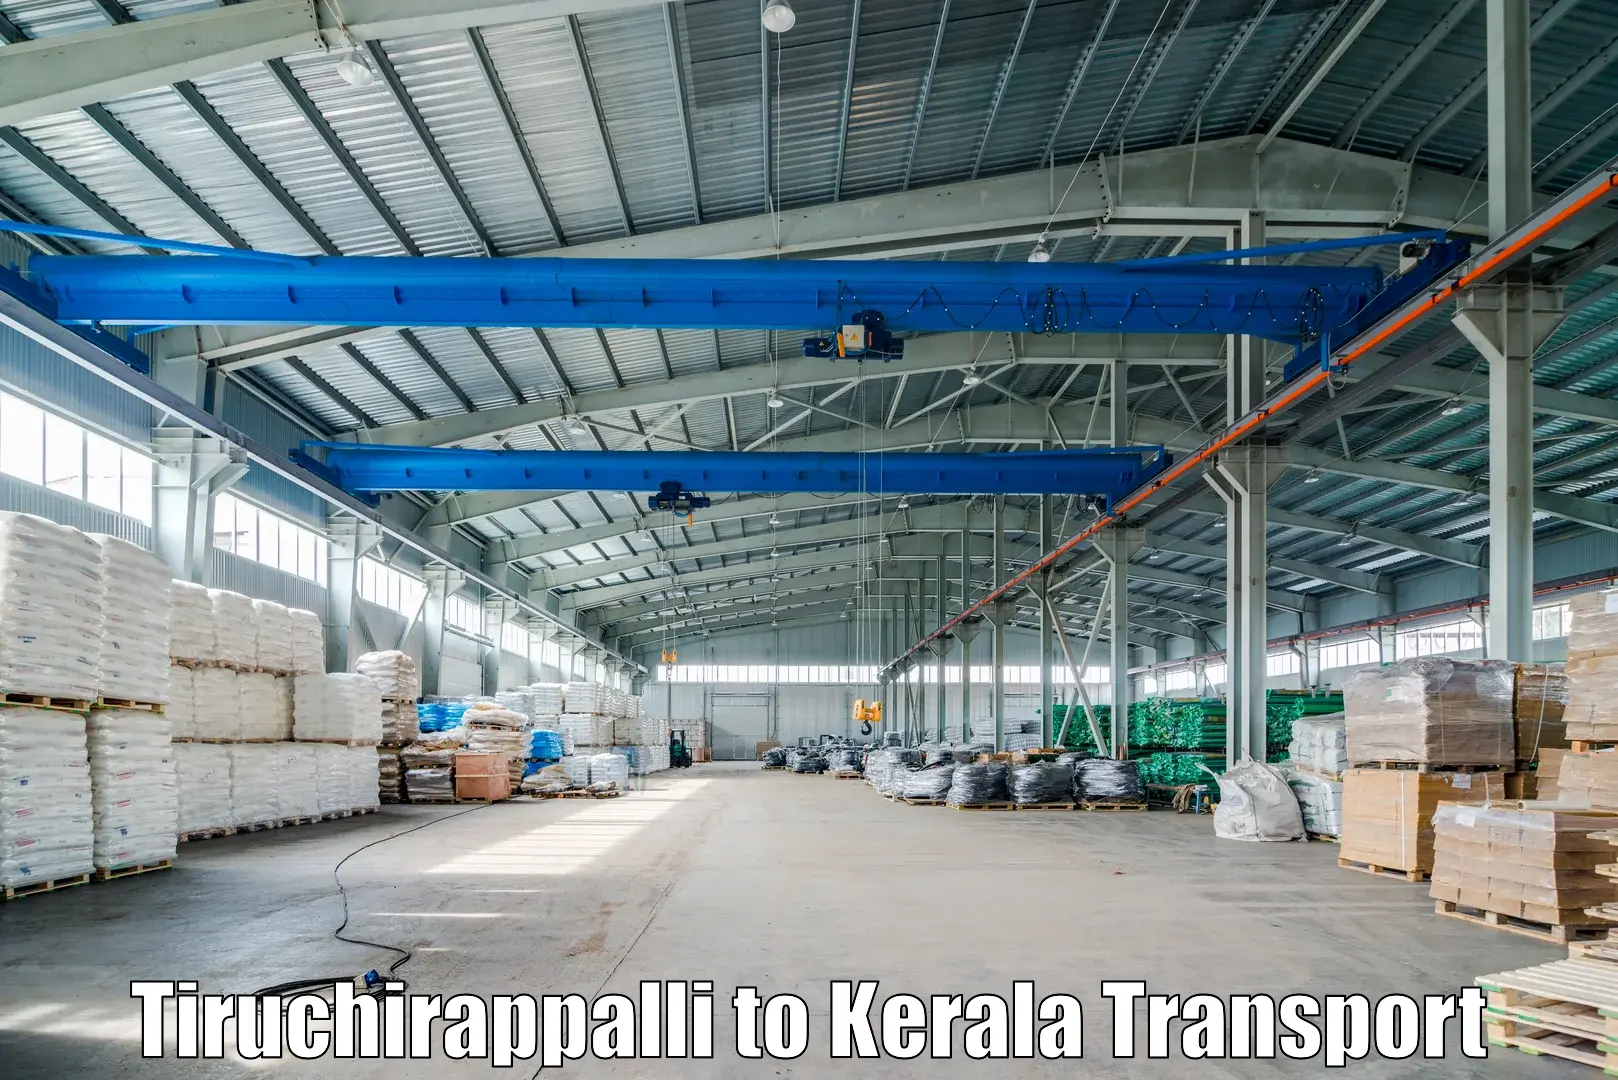 Express transport services in Tiruchirappalli to Kanhangad